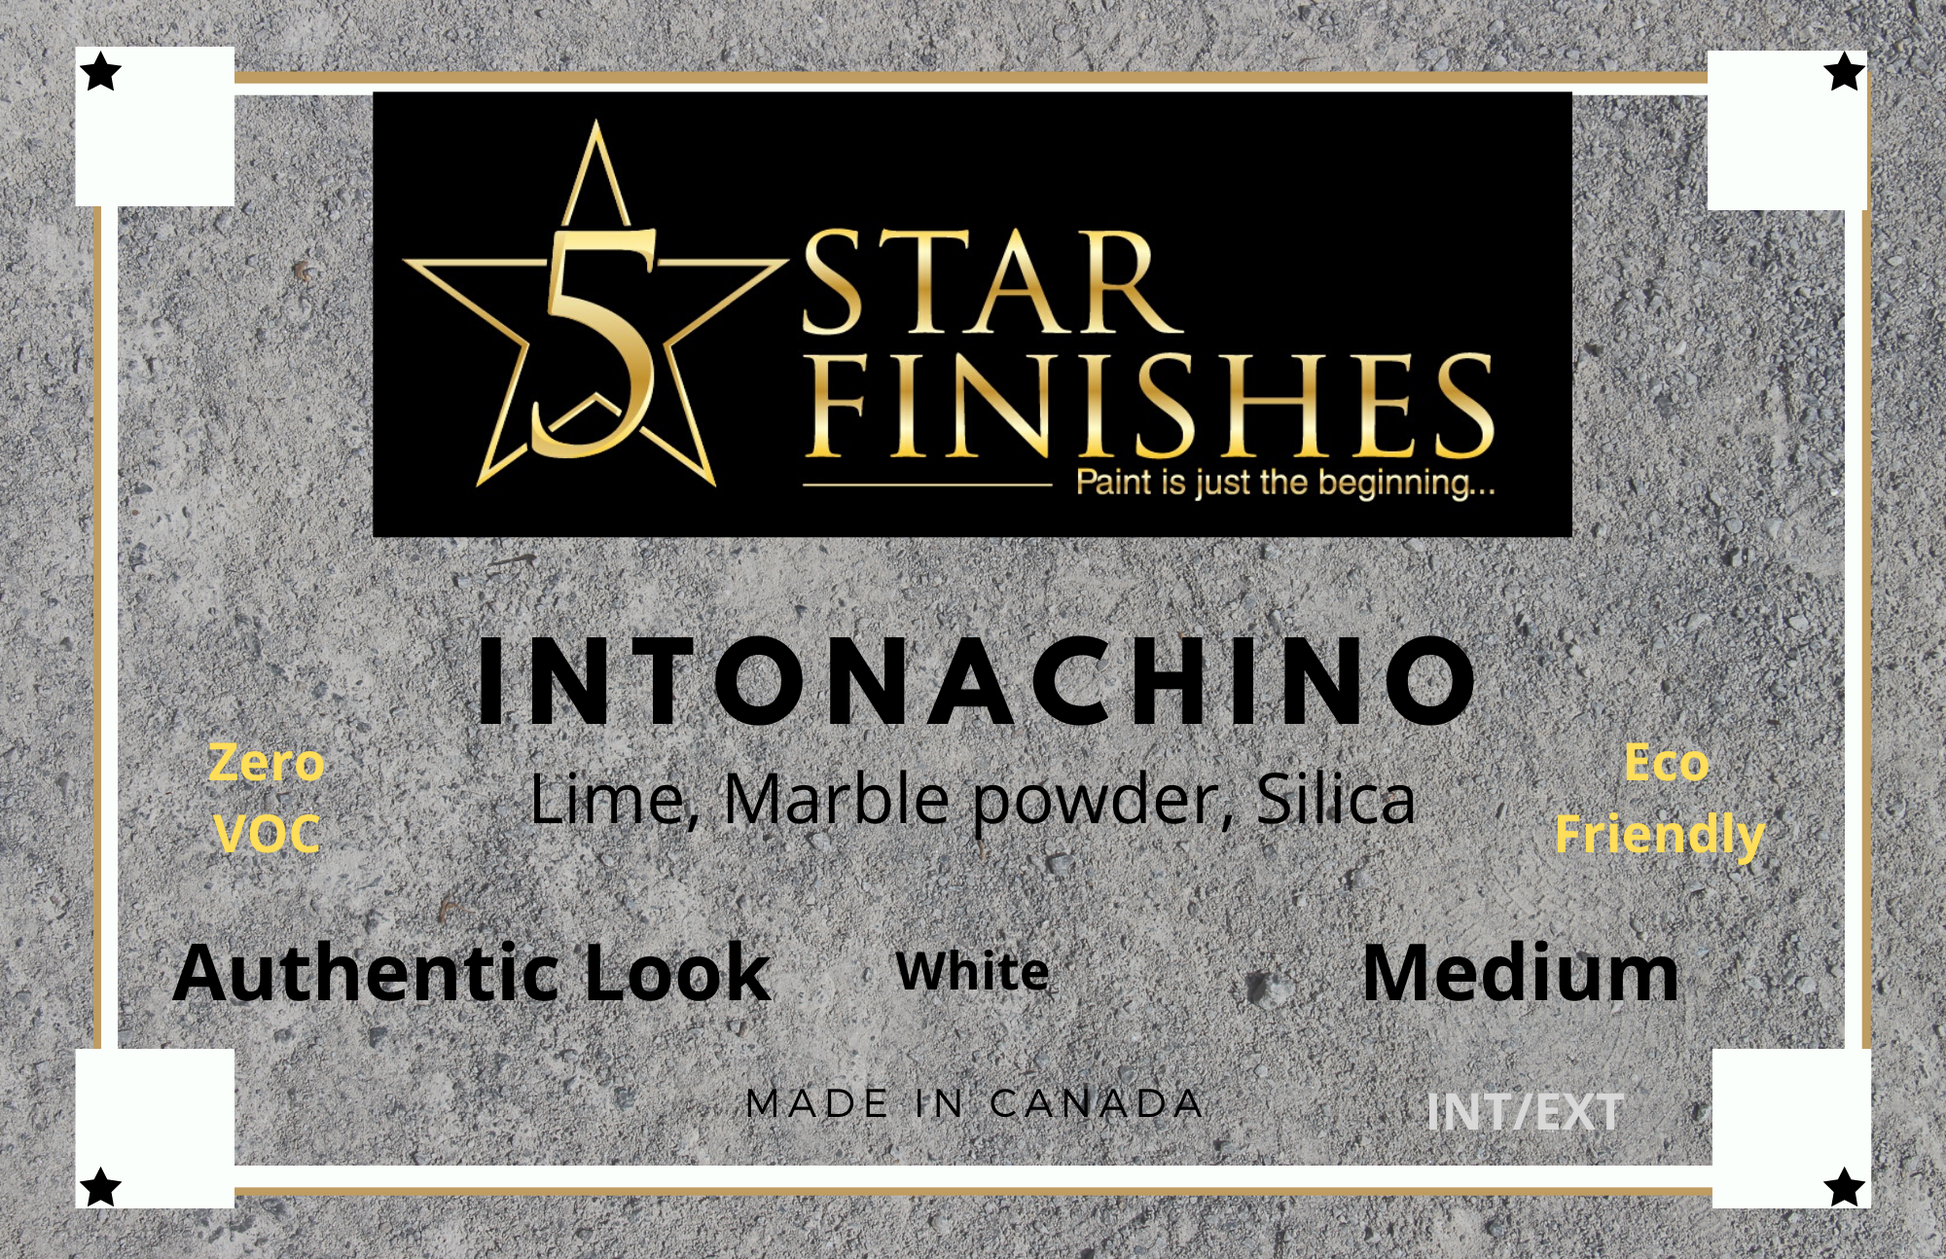 Intonachino Medium - 5 Star Finishes Ltd